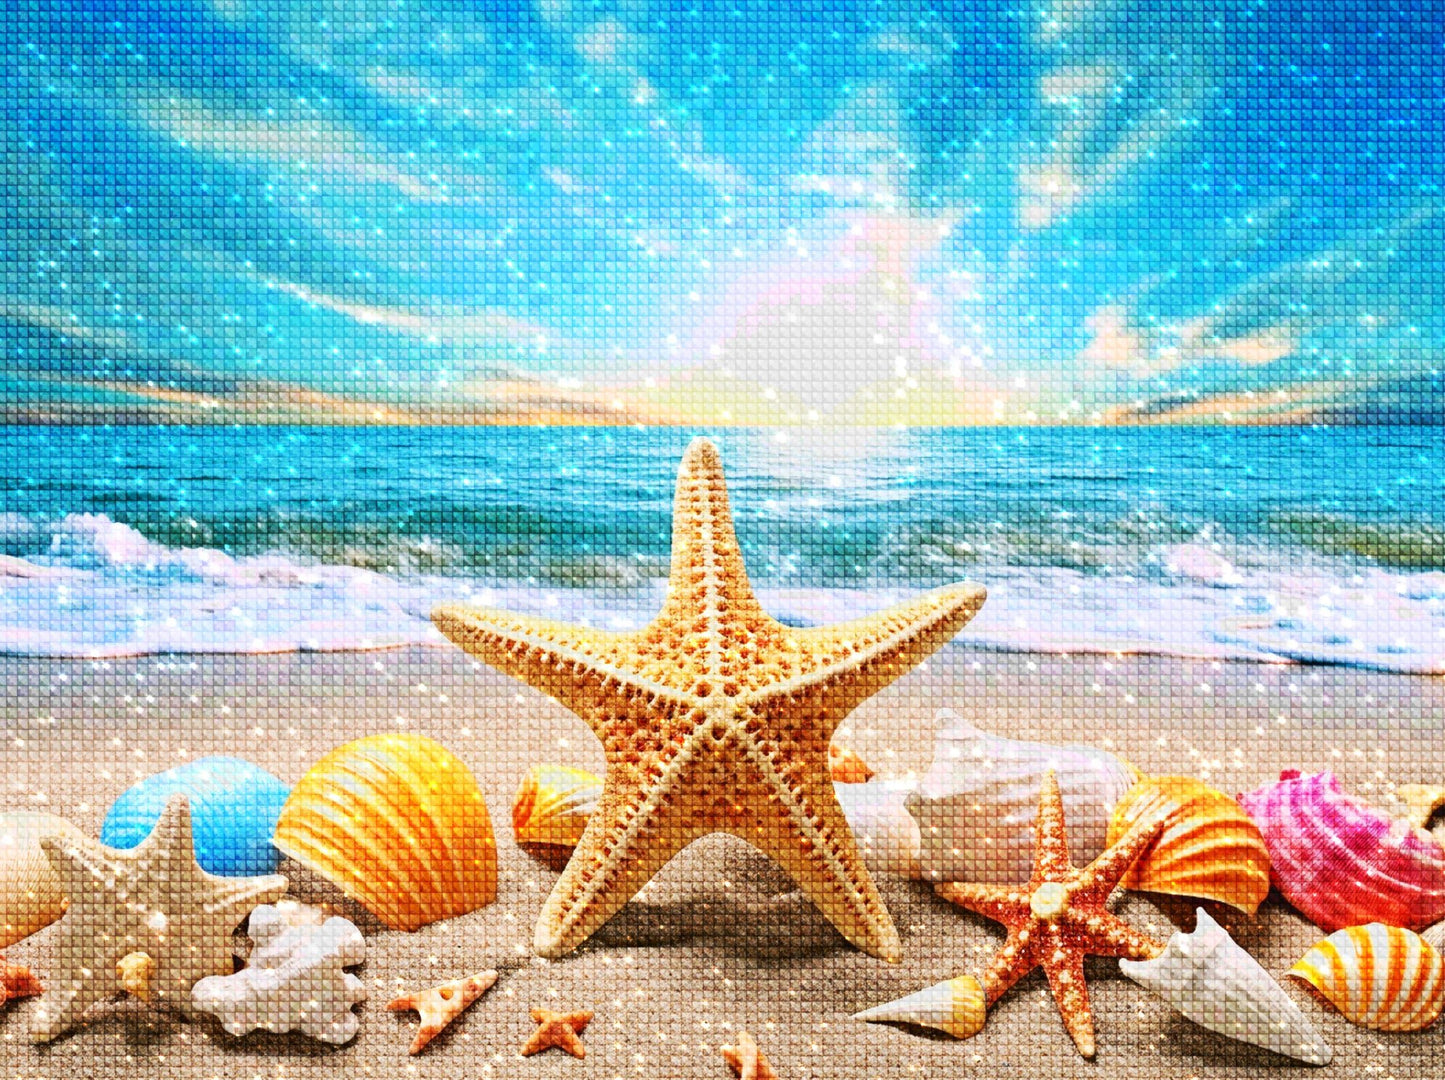 Rainbow Starfish - Diamond Painting Kit - Artslo.com